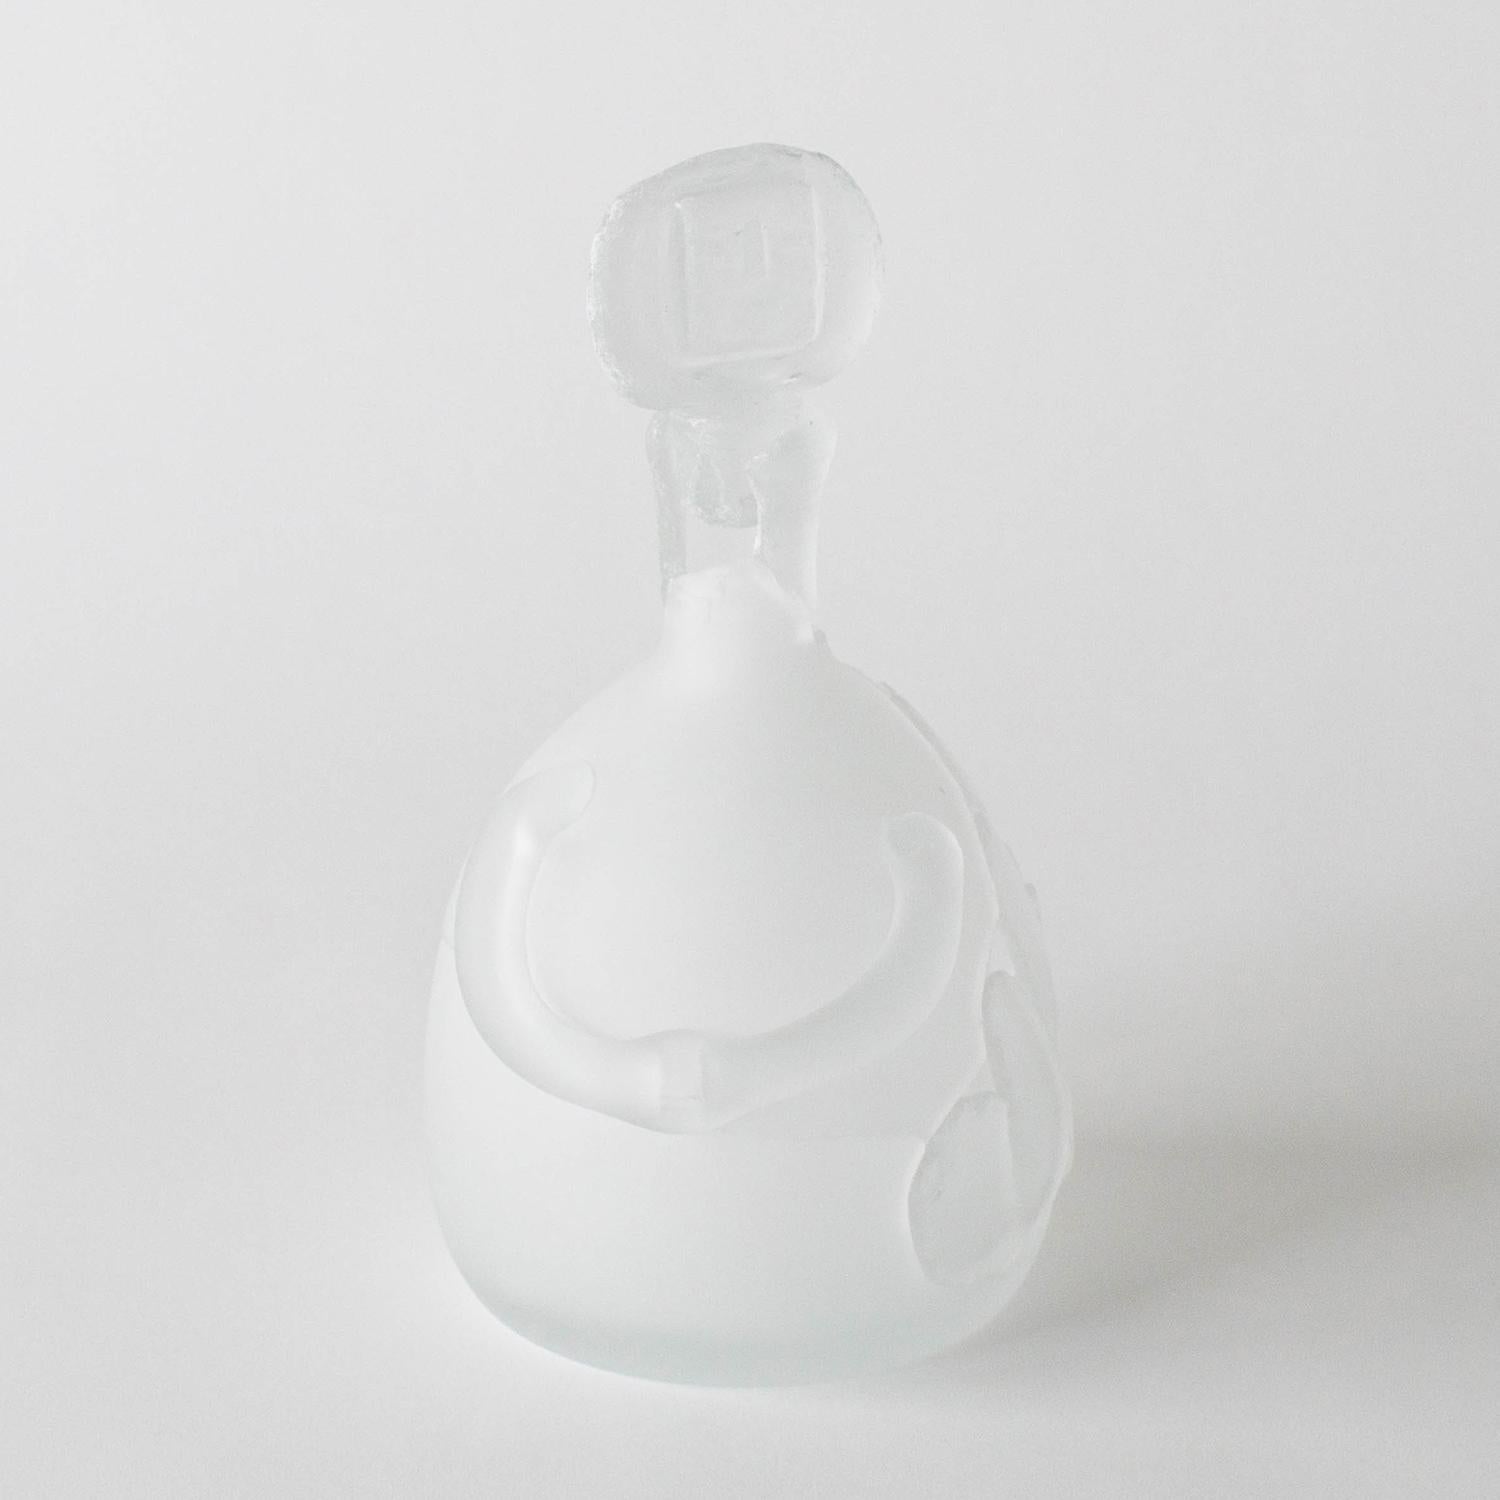 Diese Serie besteht aus einigen Glas- und einigen Keramikarbeiten. Diese Werke sind in Form und Aussehen einzigartig. Norihiko Terayama hat sie aus beschädigten Vasen, Kaffeetassen usw. geschaffen. Er beginnt, das beschädigte Objekt in einige